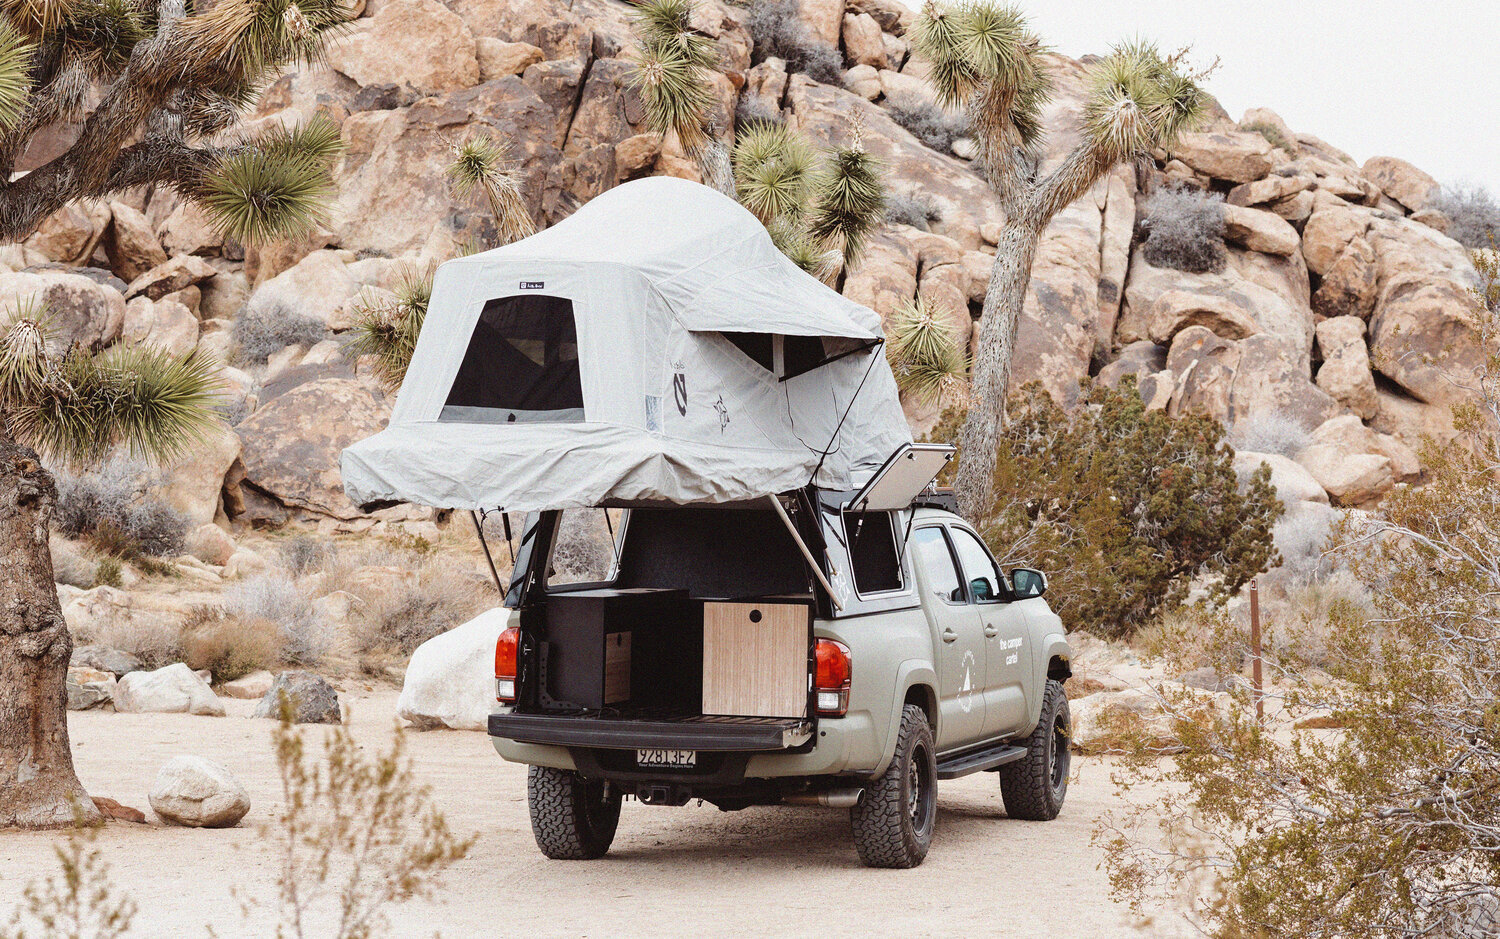 s-adventurer-toyota-tacoma-campervan-camper-cartel-exterior-rear-expanded.jpg